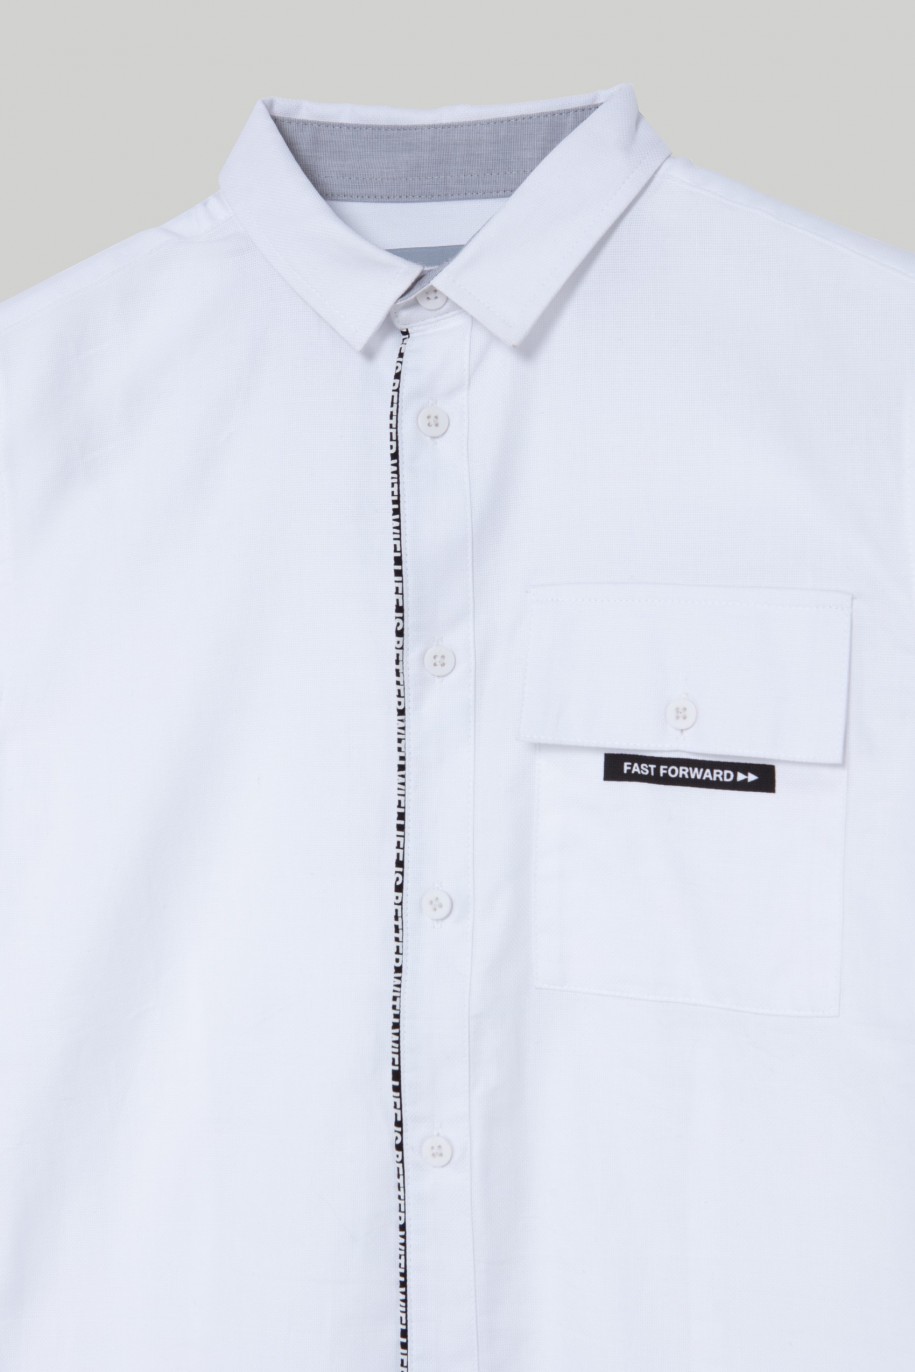 Biała koszula z krótkim rękawem, kieszenią i nadrukiem dla chłopaka - 28205